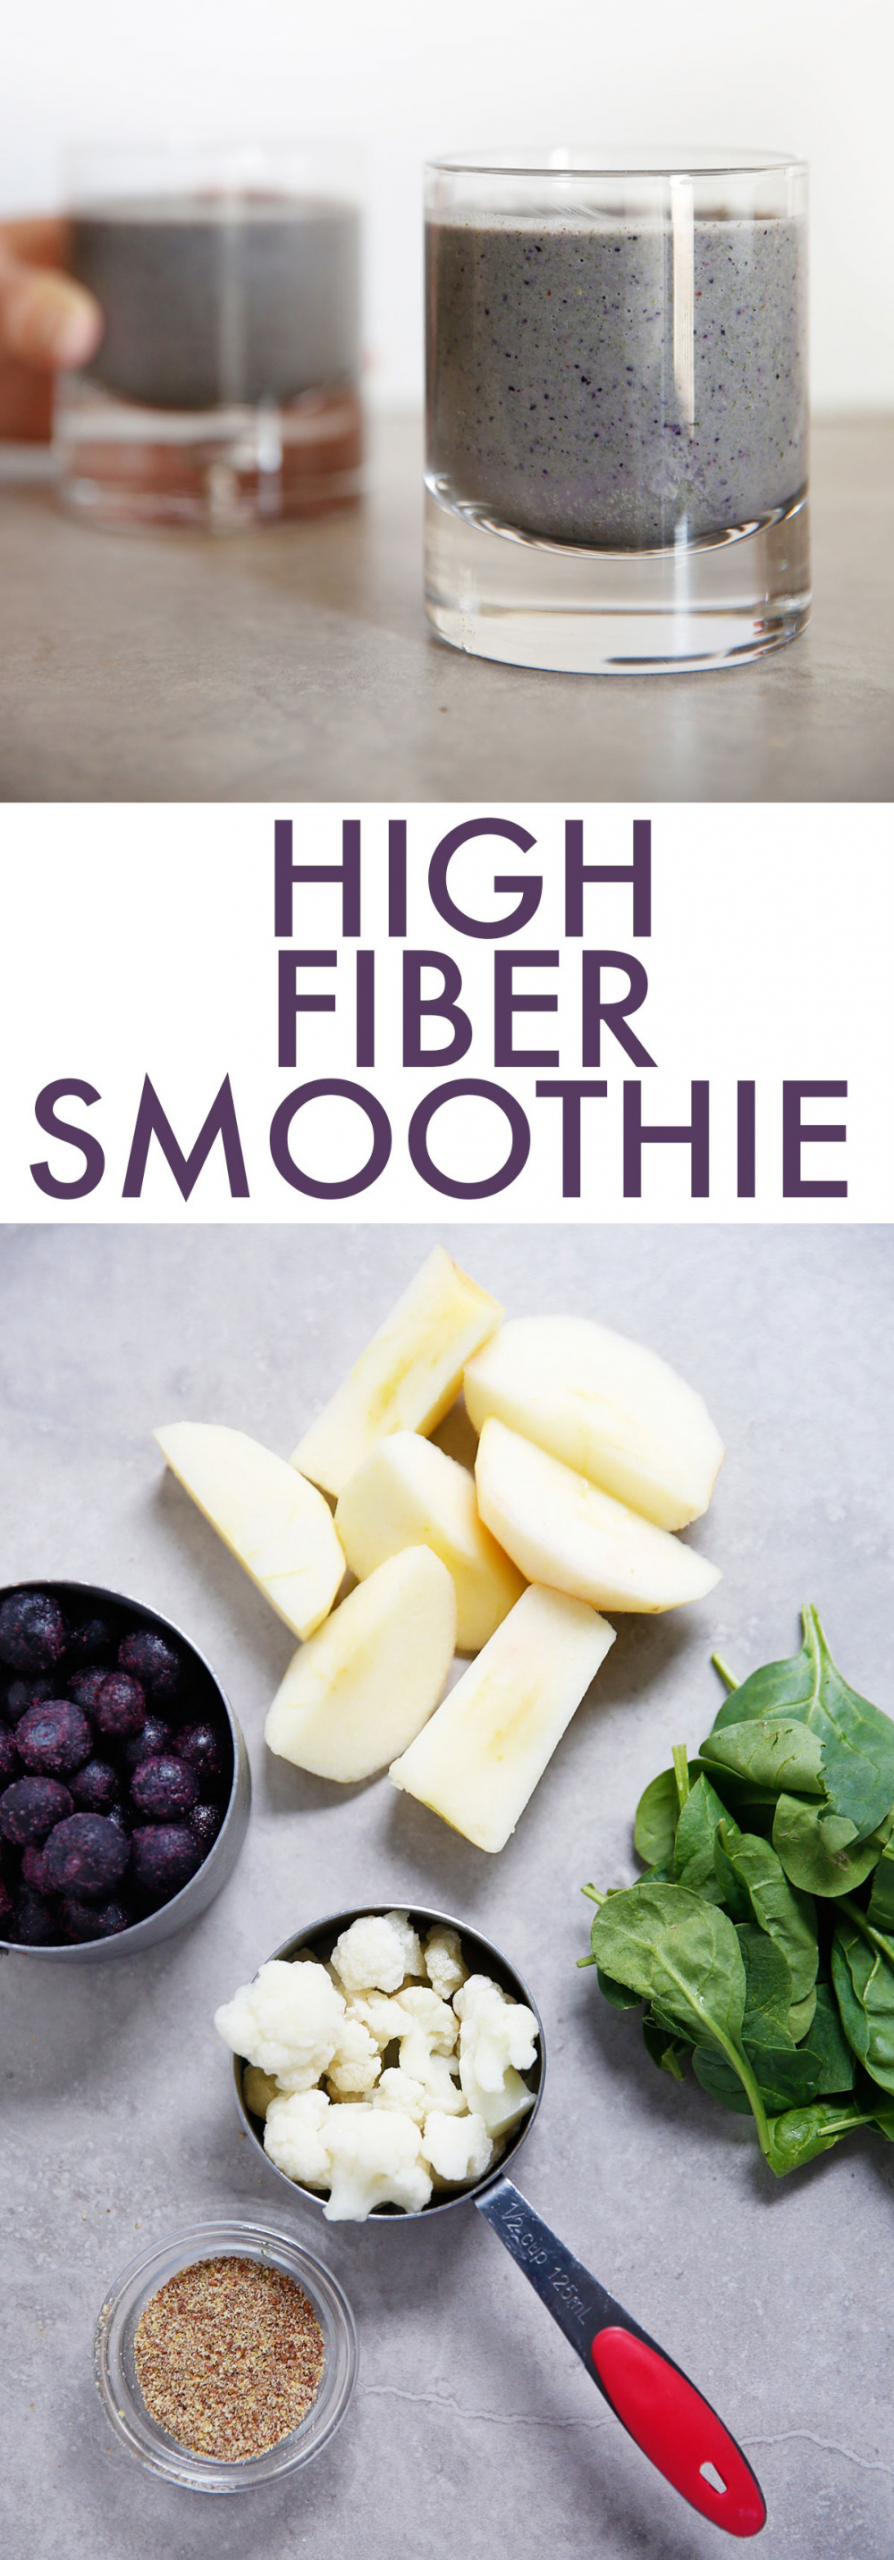 High Fiber Smoothie Recipes
 High Fiber Smoothie Freezer Pack Vegan Lexi s Clean